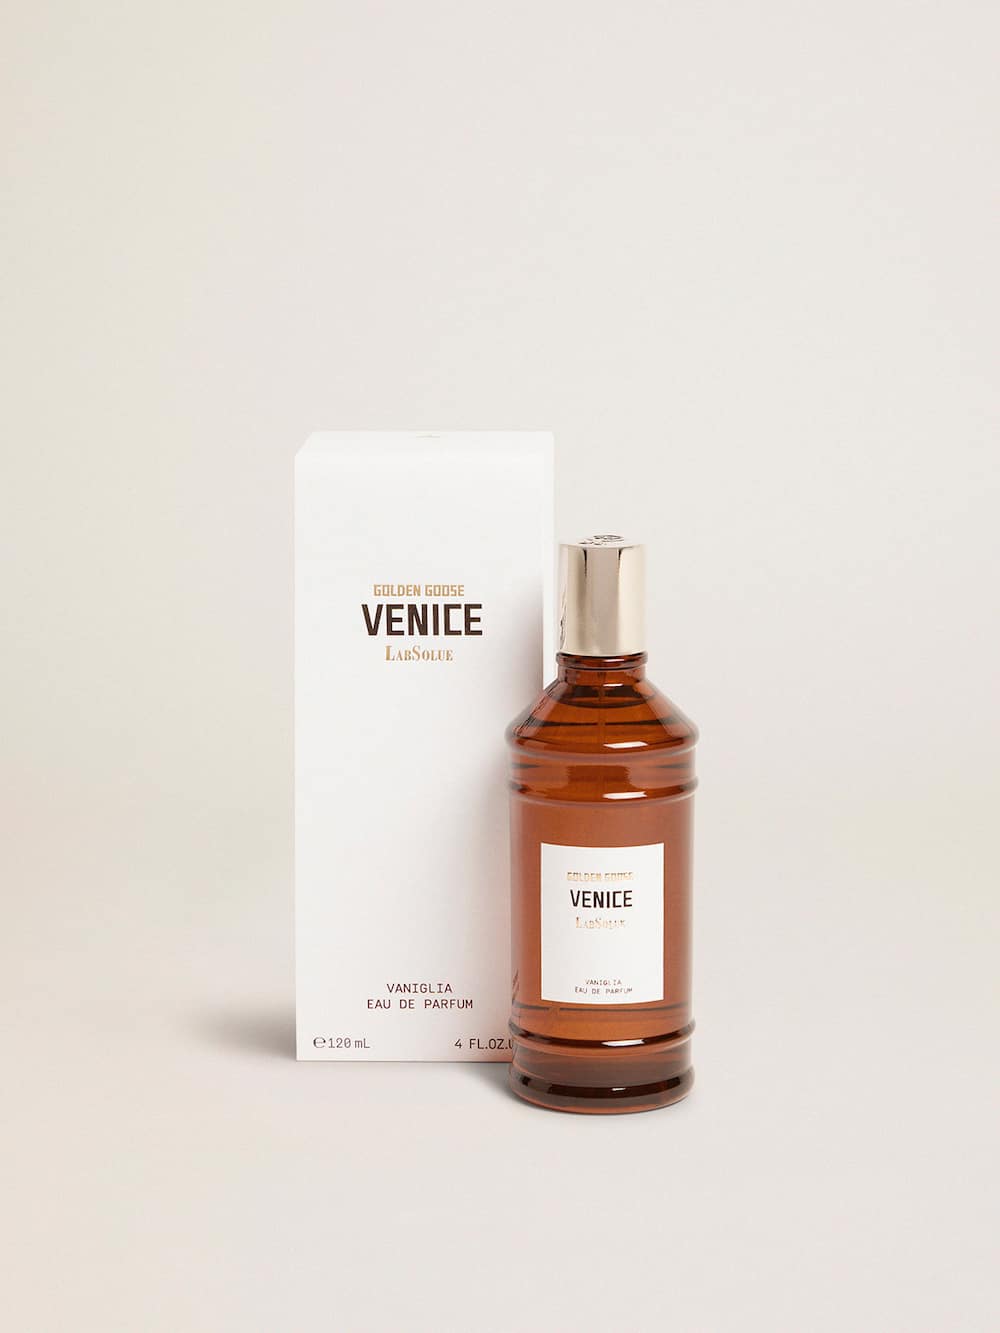 Golden Goose - Venice Essence Vaniglia Eau de Parfum 120 ml in 